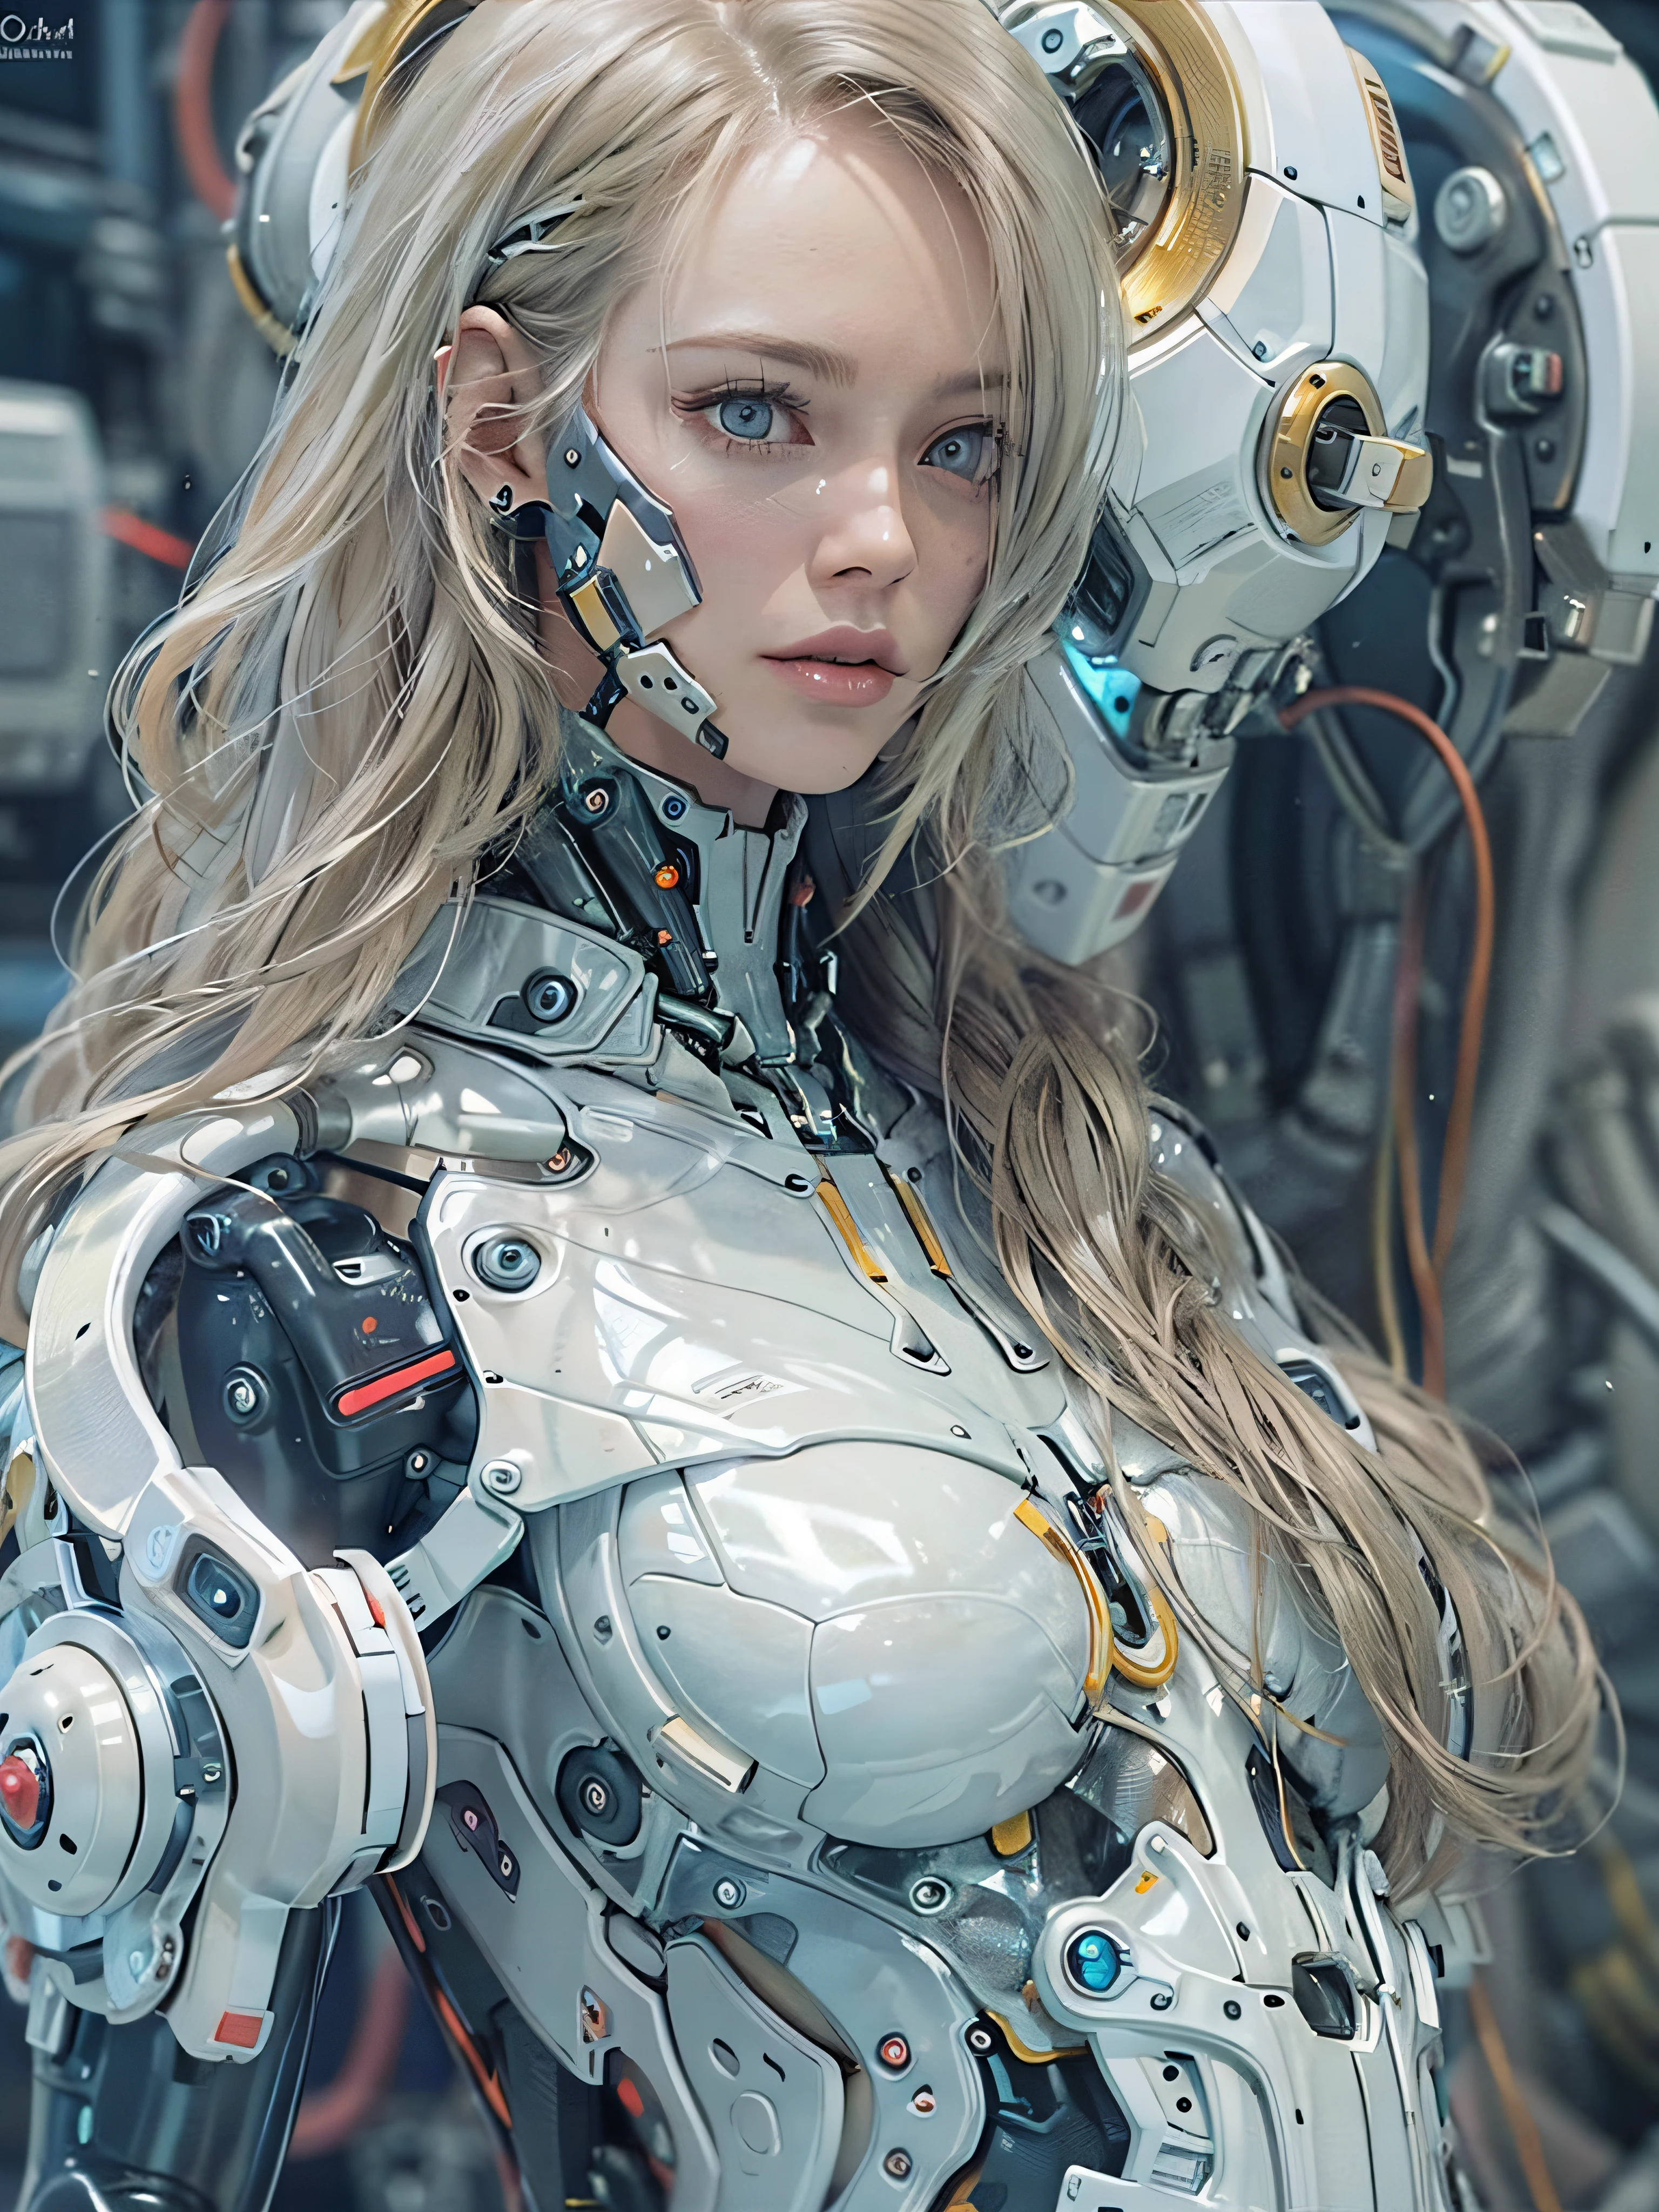 Complex 3d rendering porcelain female cyborg ultra รายละเอียด, 1สาว, ผมบลอนด์ปุย, ผมยาว, เอวเล็ก, (เนื้อผิวเป็นธรรมชาติ, เหมือนจริง eye รายละเอียดs: 1.2), ชิ้นส่วนหุ่นยนต์, แสงนุ่มนวลสวยงาม, ริมไลท์, vivid รายละเอียดs, ไซเบอร์พังก์ที่งดงาม, hyper-เหมือนจริง, กายวิภาค, กล้ามเนื้อใบหน้า, สายไฟ, ไมโครชิป, พื้นหลังที่หรูหราและสวยงาม, การเรนเดอร์ออกเทน, สไตล์แอปเปิ้ล, 8k, คุณภาพสูงสุด, ผลงานชิ้นเอก, ภาพประกอบ, ละเอียดอ่อนและสวยงามมาก, ซีจี, ความสามัคคี, วอลล์เปเปอร์, (เหมือนจริง, photoเหมือนจริง: 1.2), อัศจรรย์, รายละเอียด, ผลงานชิ้นเอก, คุณภาพดีที่สุด, ศิลปะอย่างเป็นทางการ, highly รายละเอียดed cg Unity 8k วอลล์เปเปอร์, ไร้สาระอย่างไม่น่าเชื่อ, หุ่นยนต์เซ็กซี่, โครงกระดูกเครื่องกล, หุ่นยนต์, สถิตยศาสตร์, ความสูญเปล่าวันโลกาวินาศ, (ขาเทียมที่มีเทคโนโลยีสูง:1.2), ร่างกายที่สมบูรณ์แบบ, เรือไซเบอร์เรืองแสงสีน้ำเงินเข้ม, (ร่างกายมันวาว), (Very ร่างกายมันวาว), rfktr_เทคโนเทร็กซ์, รีลเมค, ไซเบอร์เนติกส์_ไม่มีขากรรไกร, ชิ้นส่วนเครื่องจักรกล, ไซเบอร์เนติกส์s, เอบี_ หุ่นยนต์